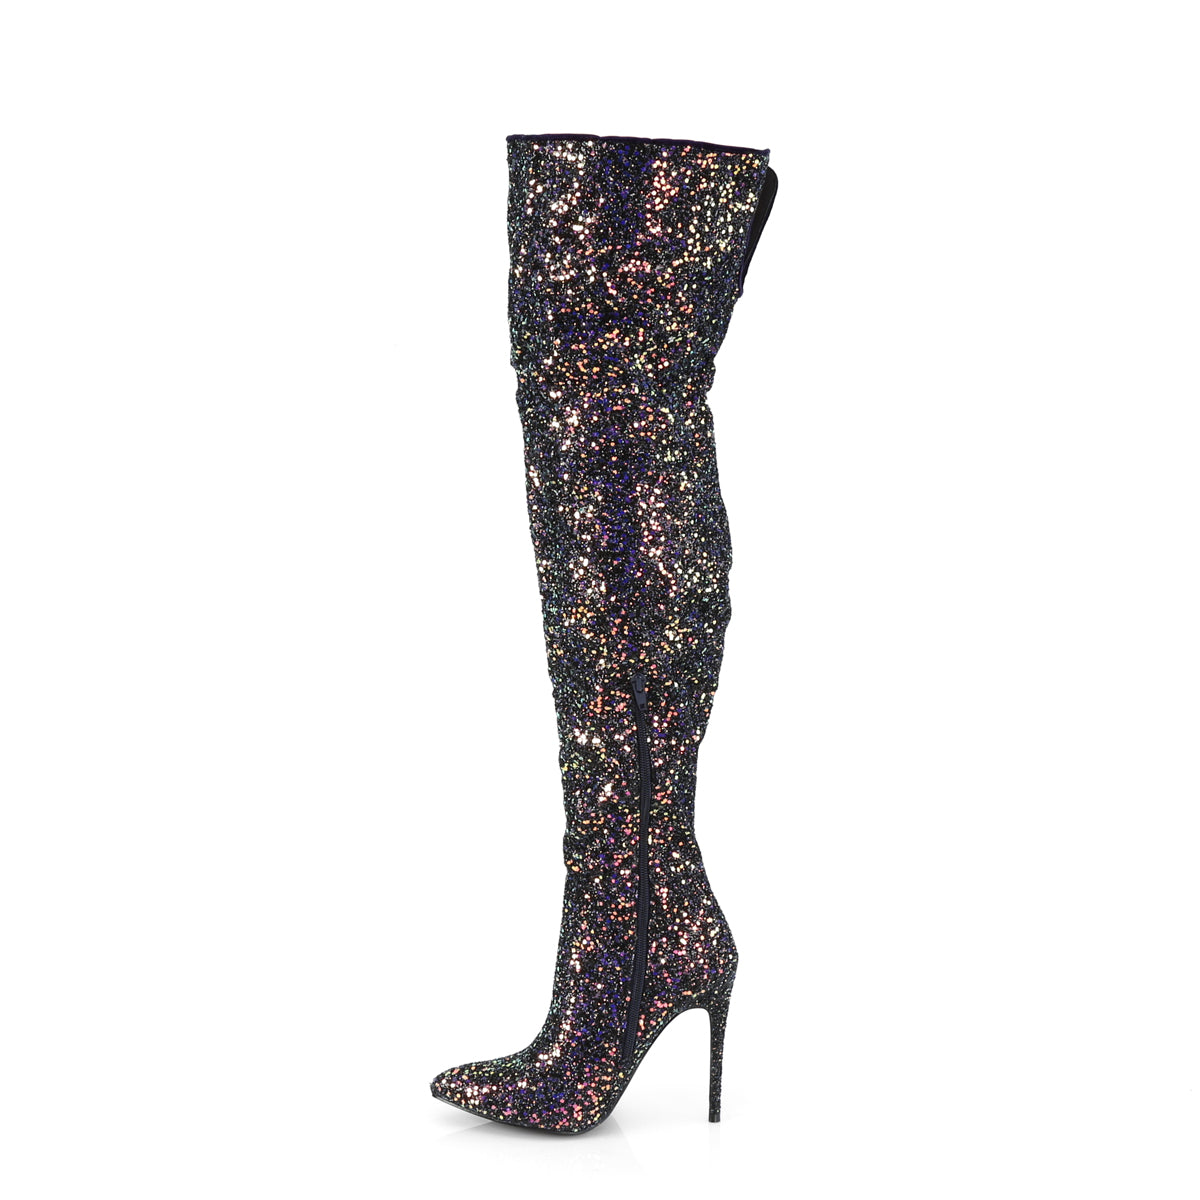 Pleaser Stivali da donna COURTLY-3015 BLK Multi glitter